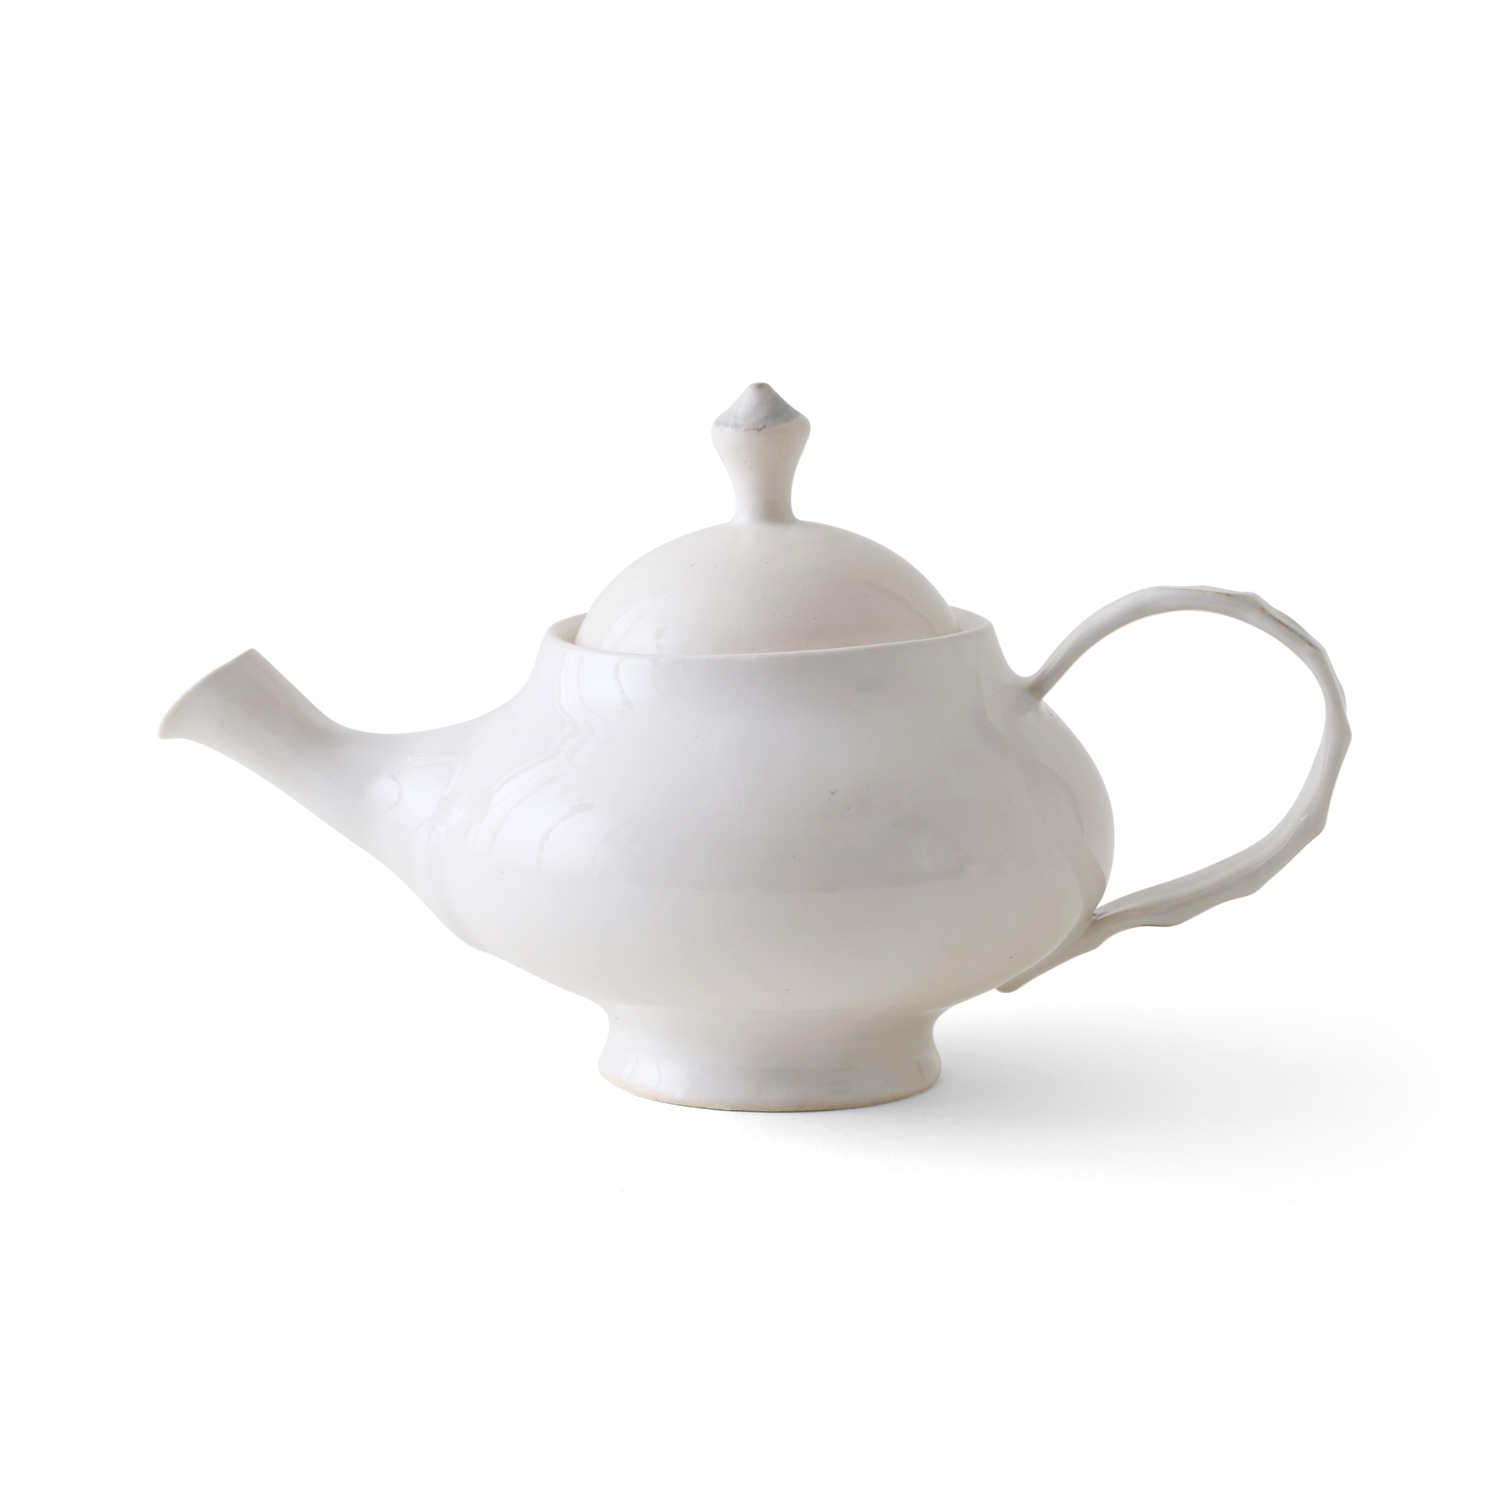 wakako ceramics/まほうのティーポット小 -【当店限定】紅茶をおいしく 